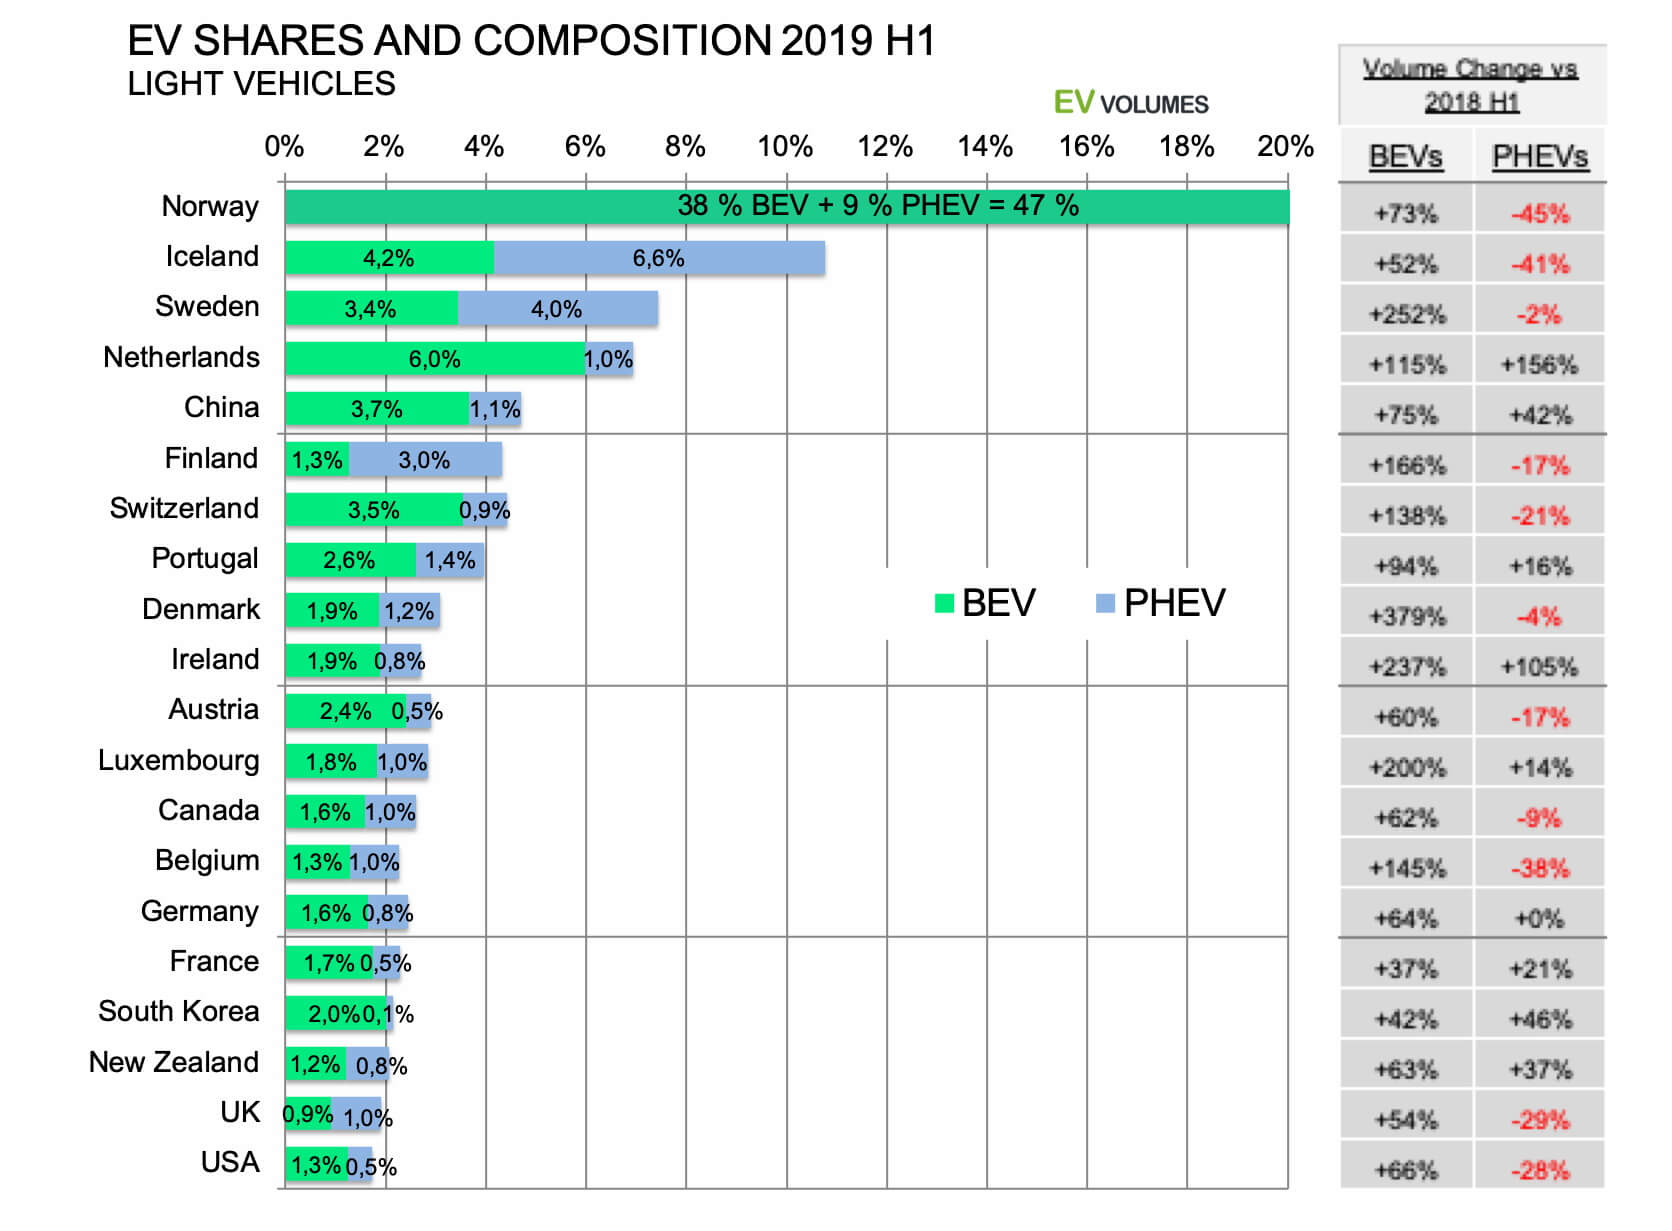 Доля электрифицированных автомобилей по странам Европы в сравнении с 2018 годом (H1)